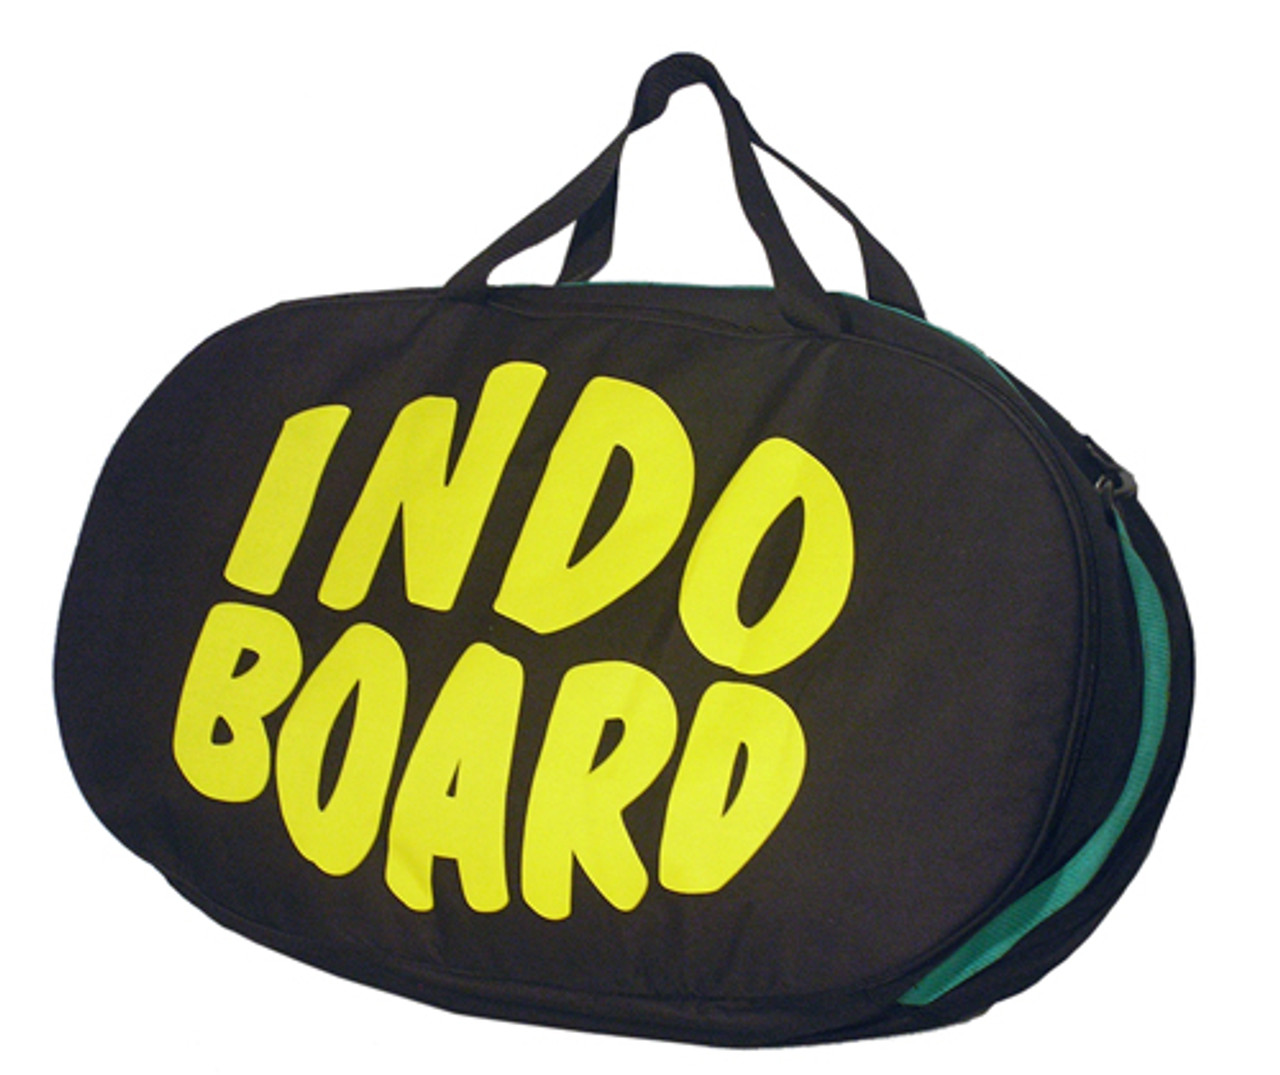 Original Gym Bag - INDO BOARD® - Official Site for the Original 